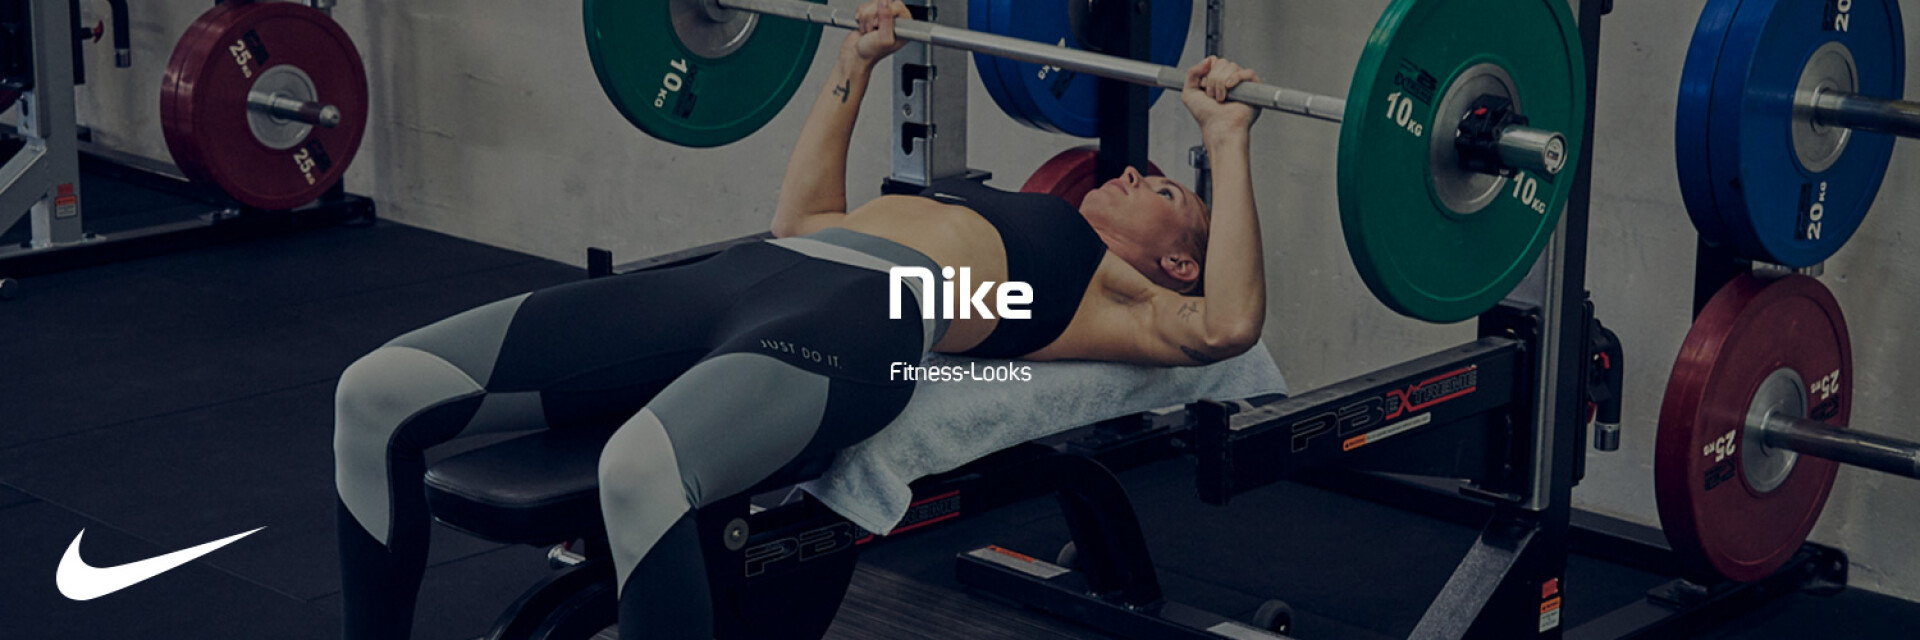 Nike Fitness Looks